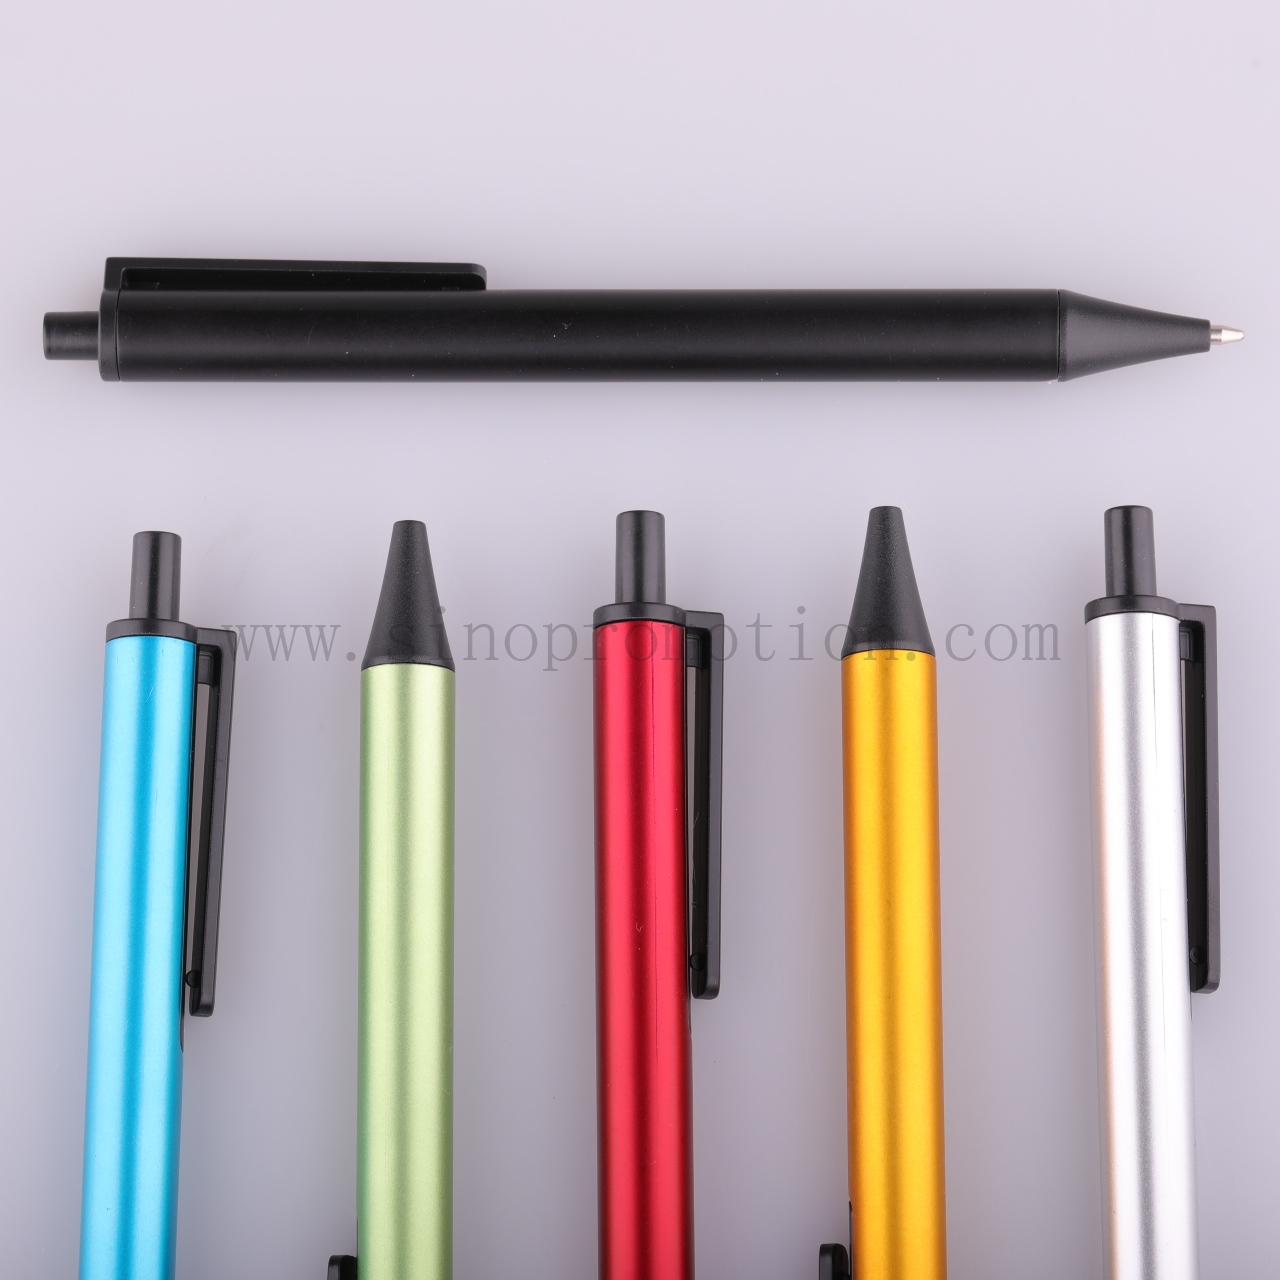 download custom pens